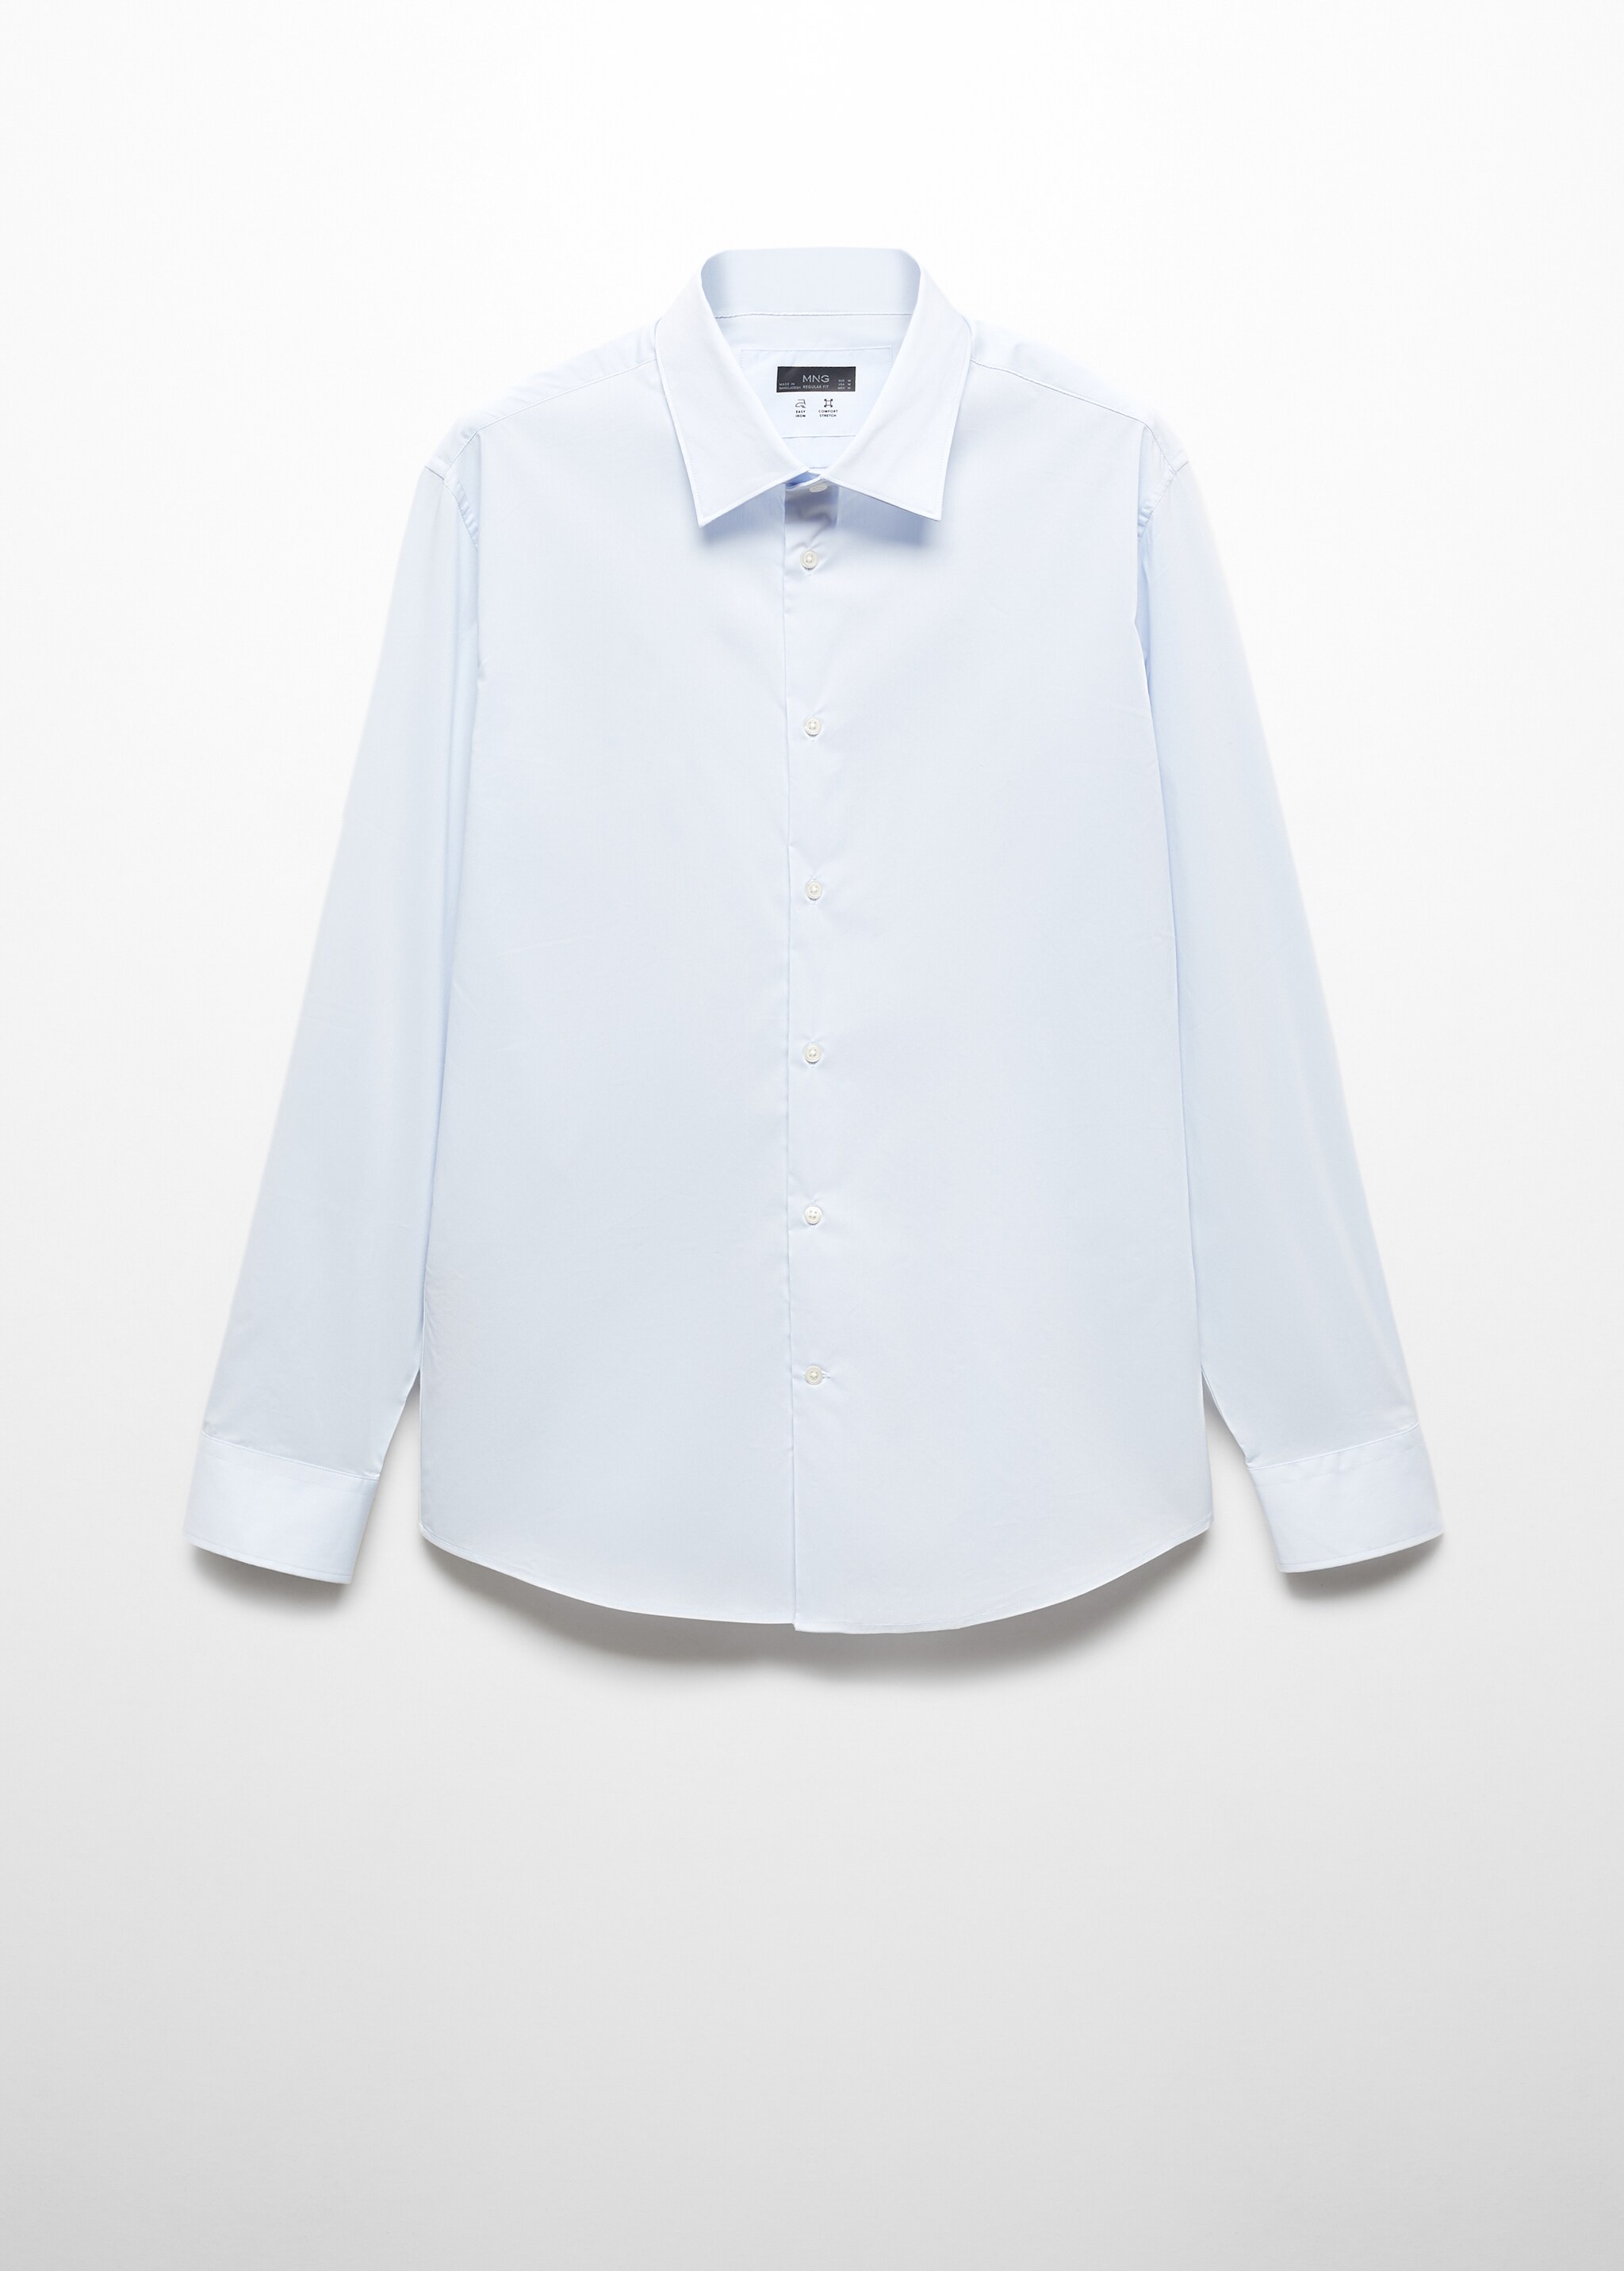 Camisa slim fit de algodão stretch - Artigo sem modelo